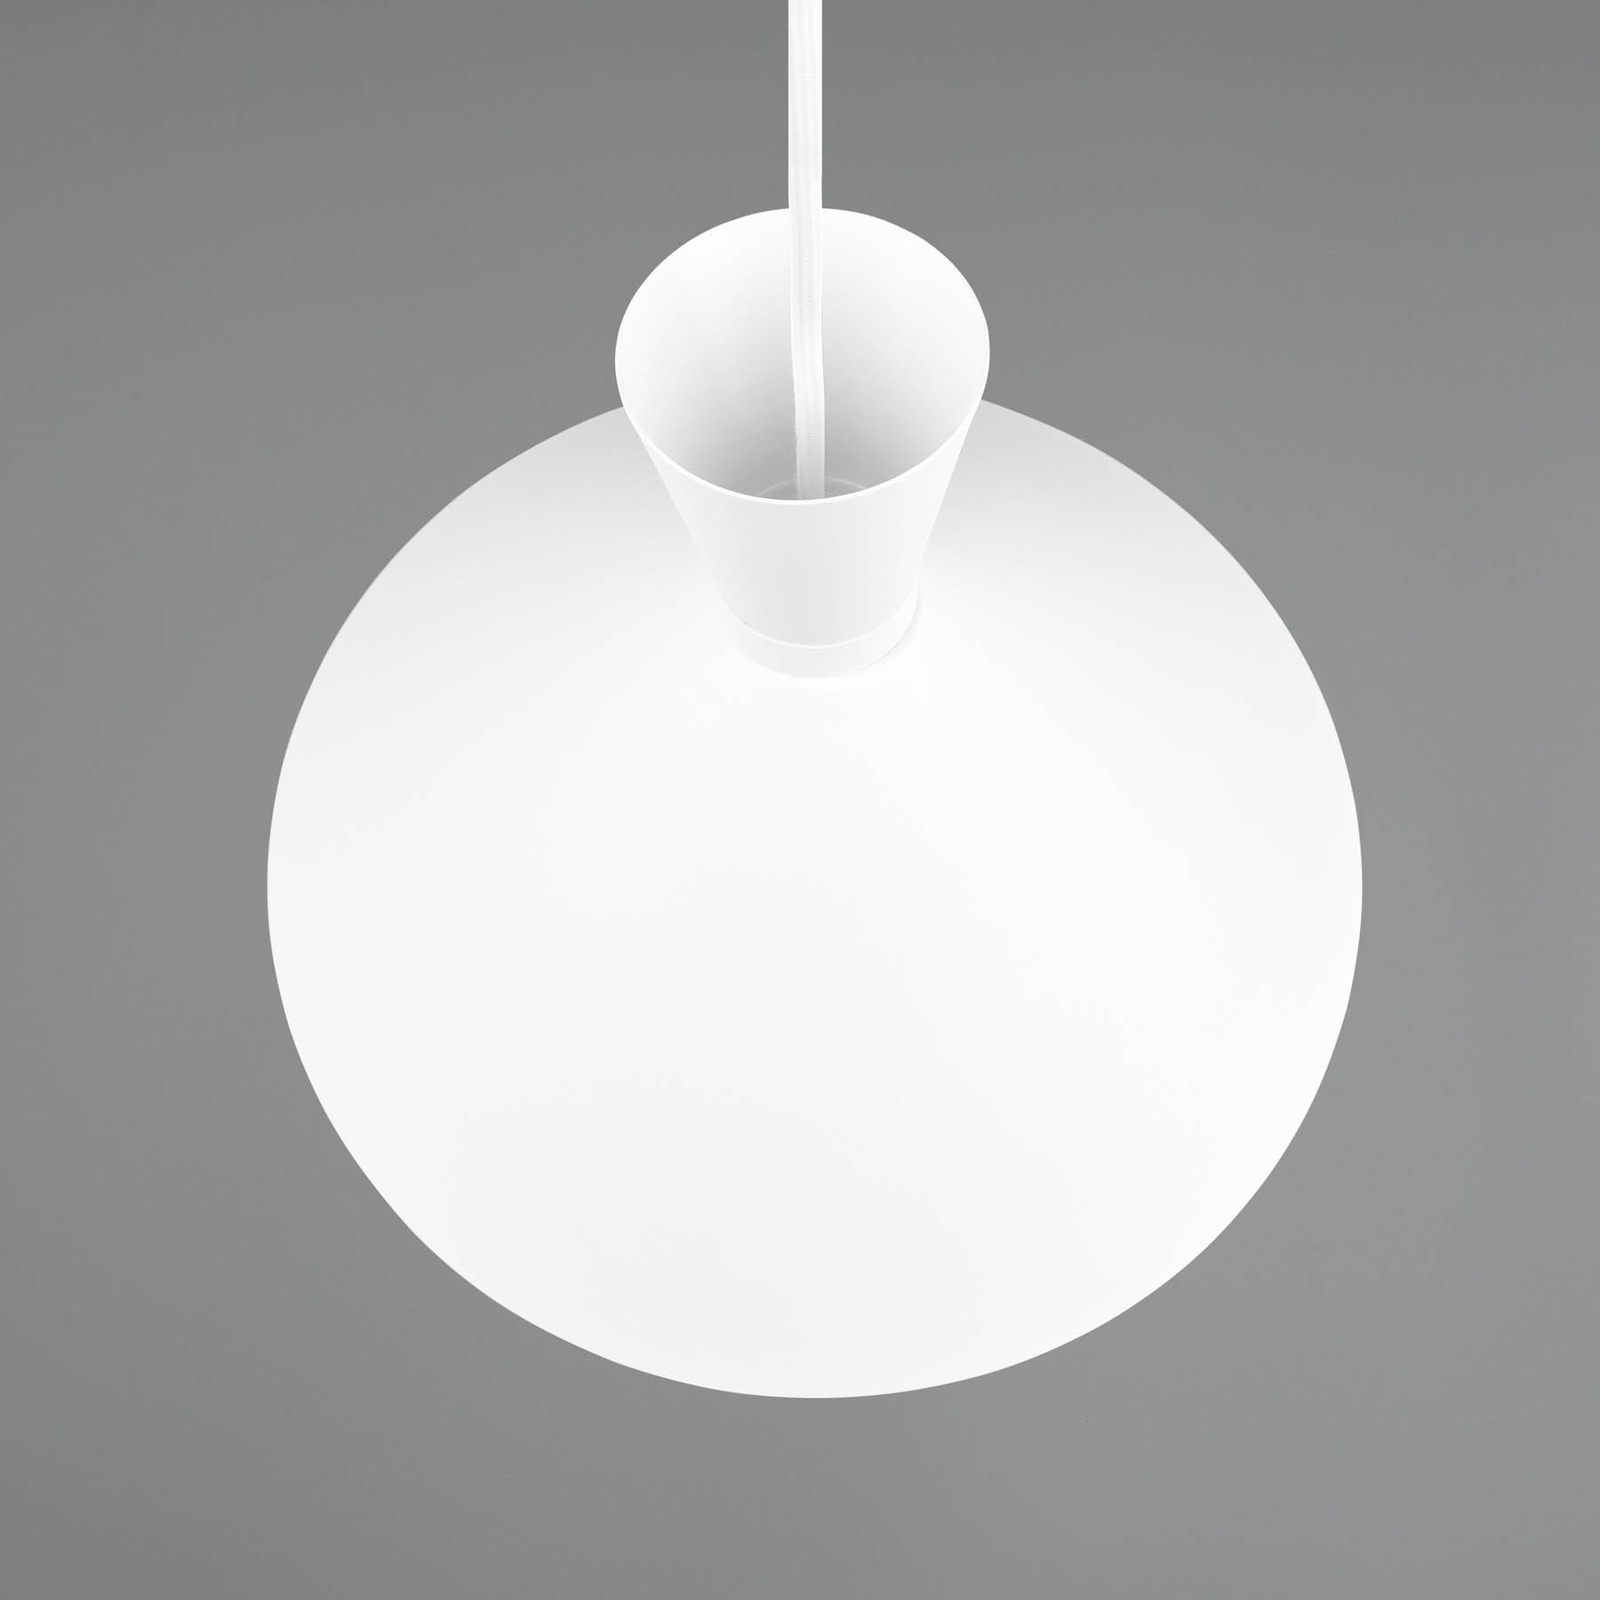 Enzo hængelampe, Ø 35 cm, hvid, 1 lyskilde